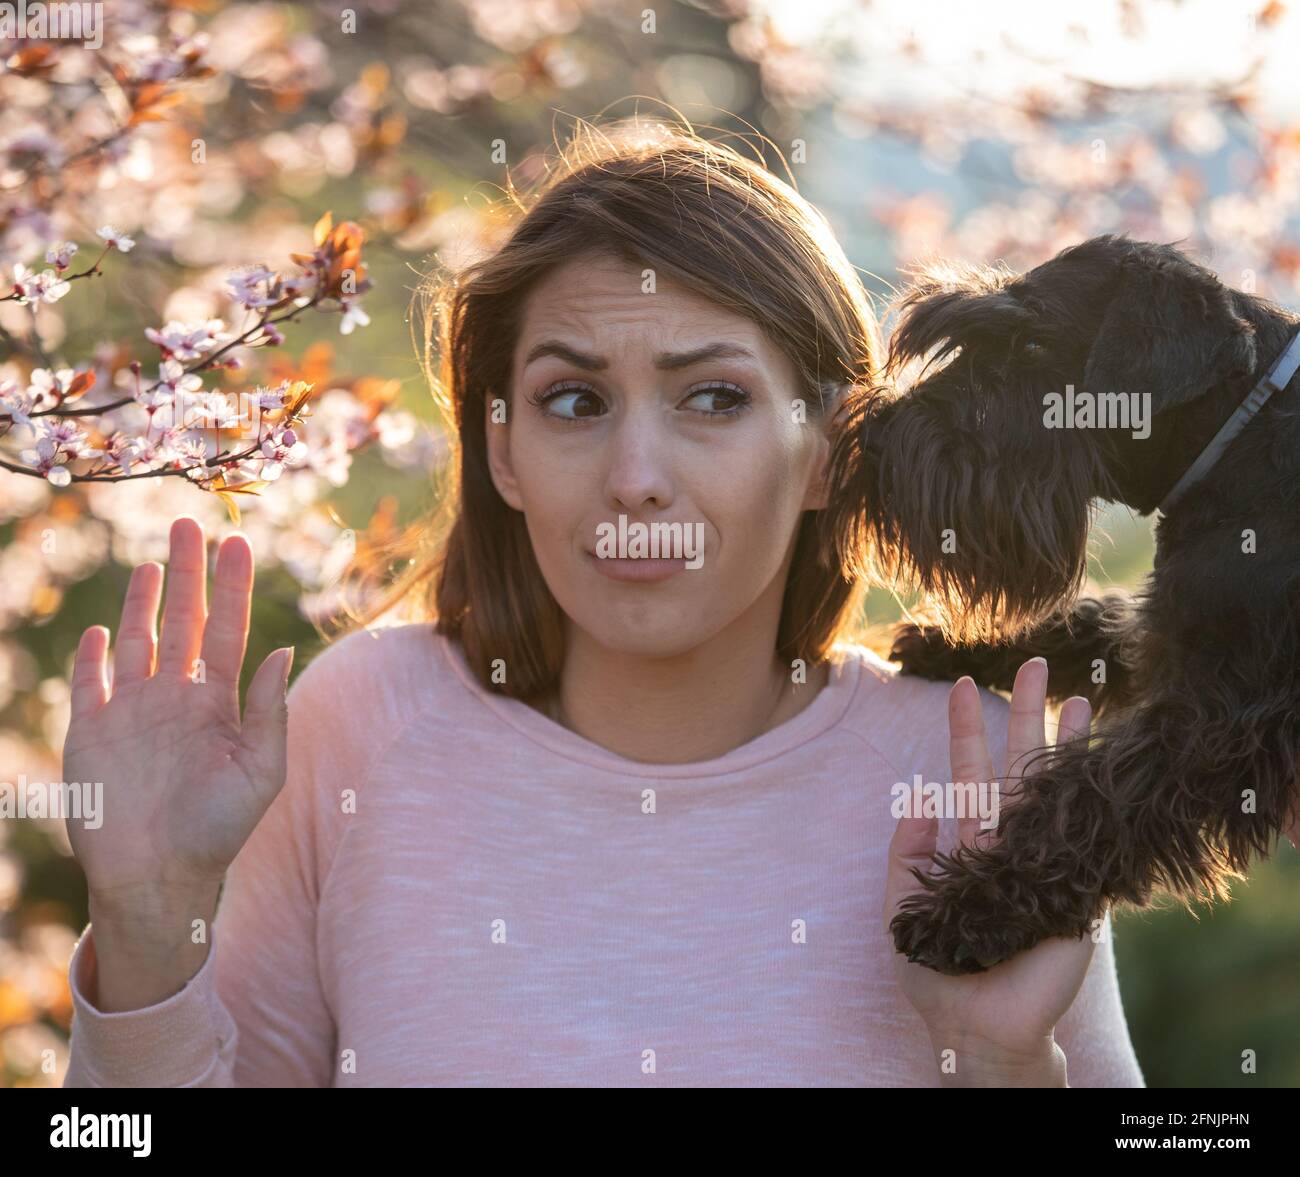 Ängstliches Mädchen, das dem Hund und dem blühenden Baum ein Stoppschild zeigt Wegen allergischer Reaktion auf Pollen und Tierhaare Stockfoto